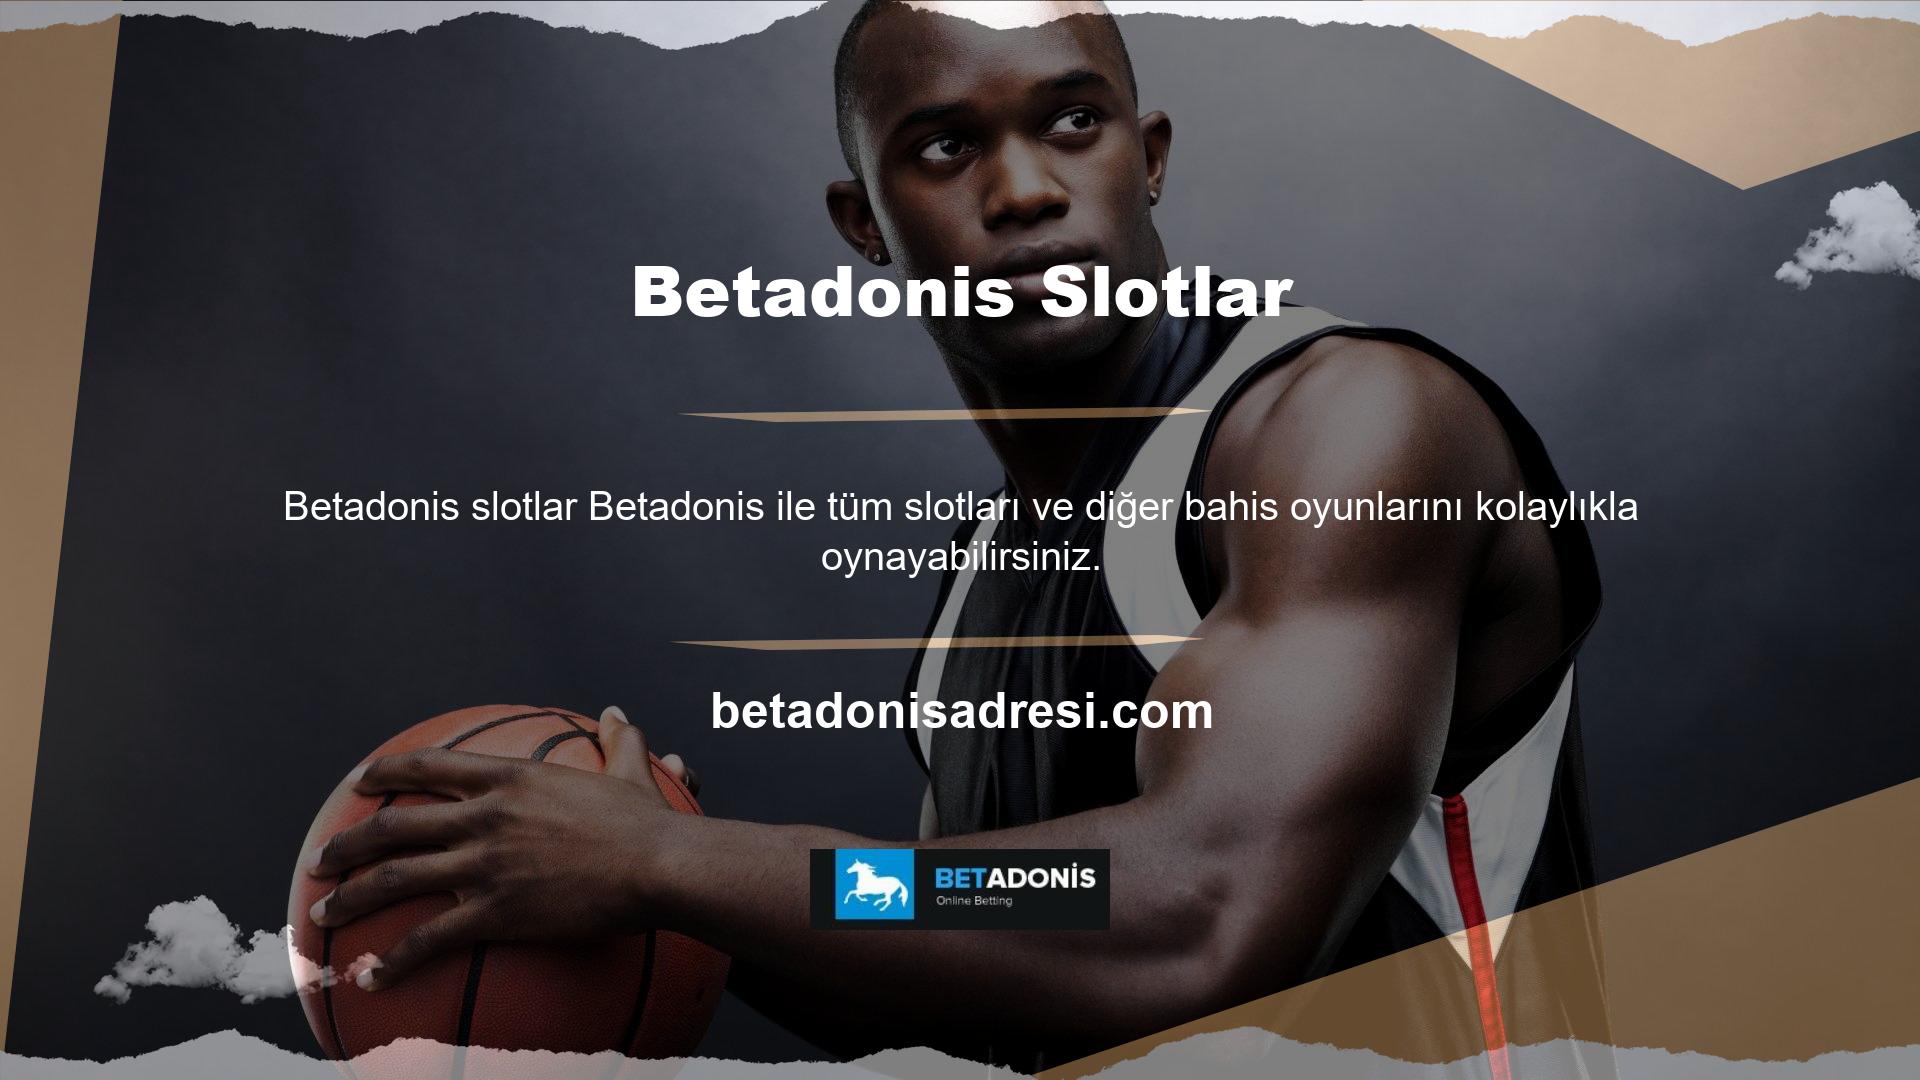 Betadonis ayrıca canlı casino bahisleri de sunmaktadır